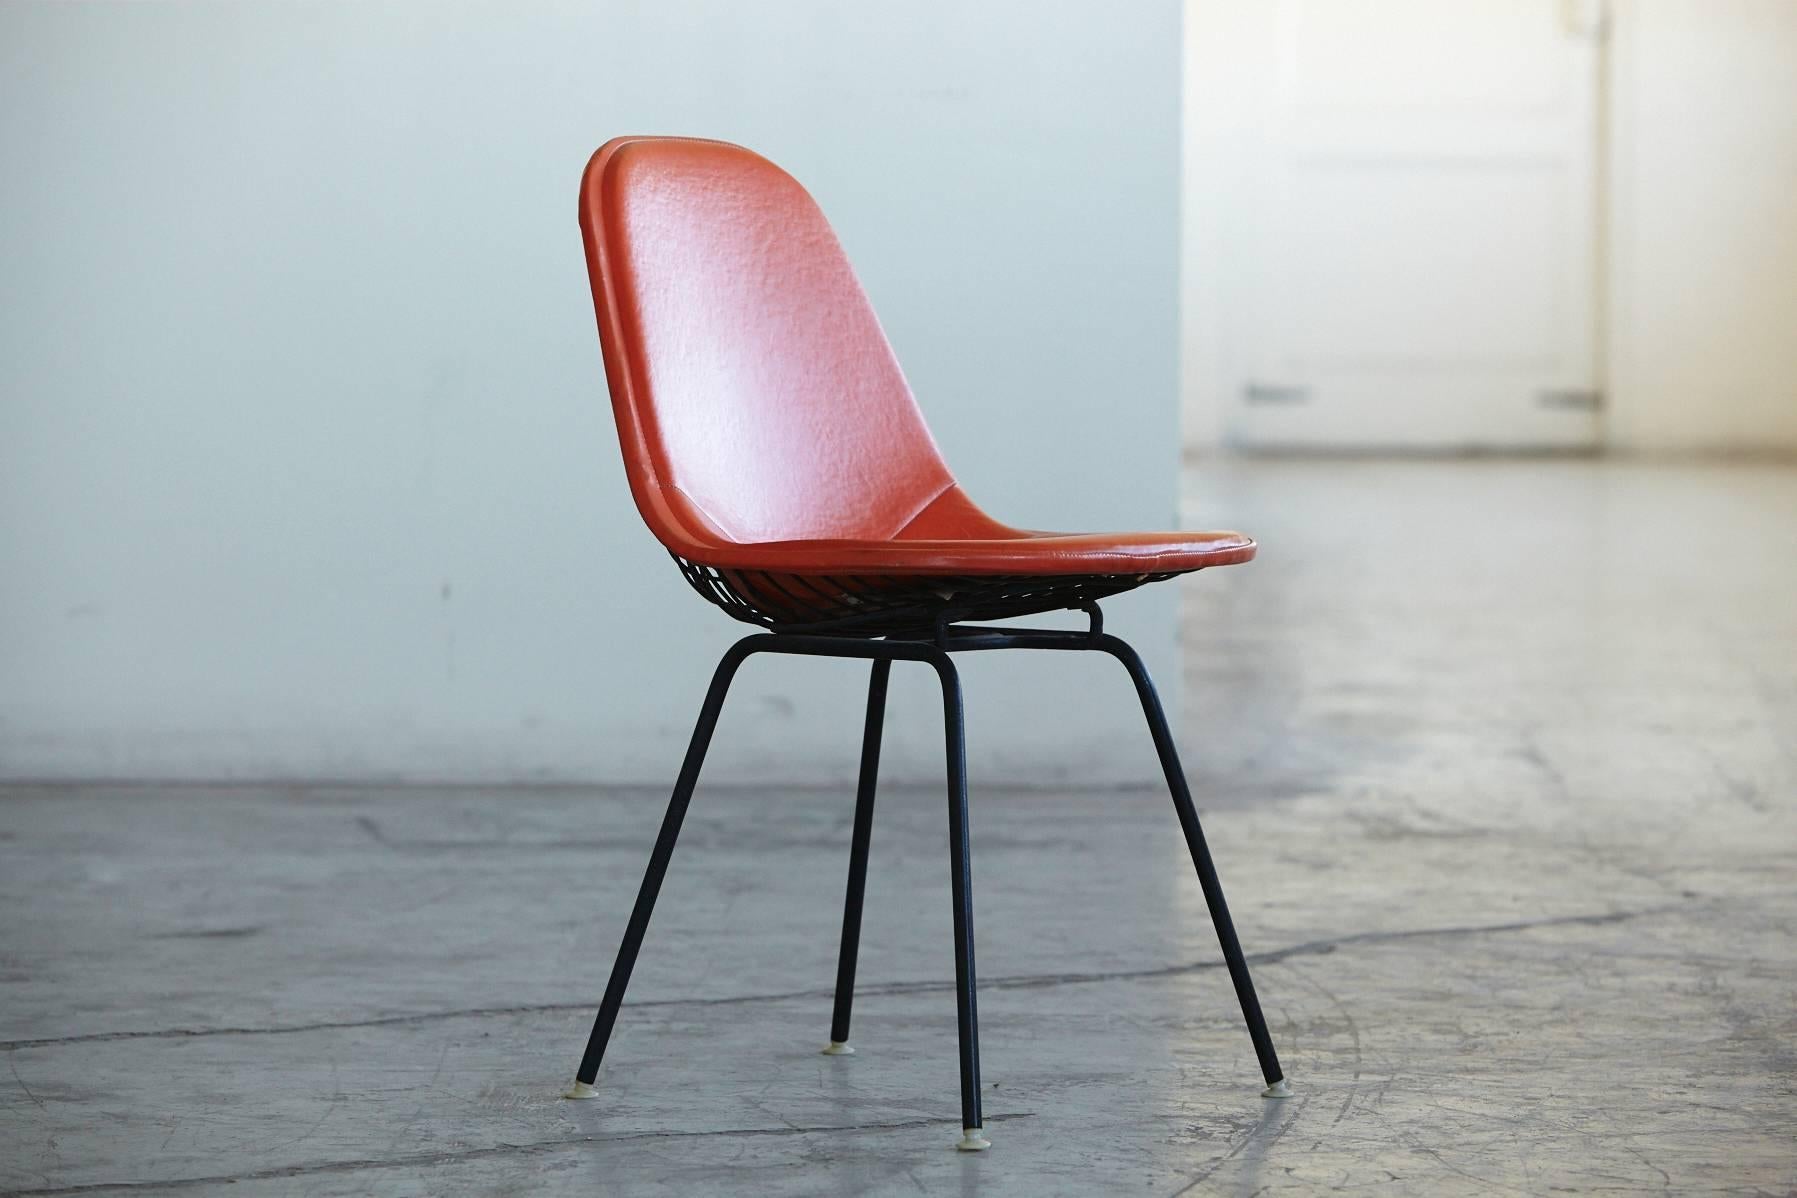 Charles und Ray Eames Beistellstuhl DKX-1 aus orangefarbenem Leder für Herman Miller, ca. 1960er Jahre.
Der Stuhl ist in sehr gutem Vintage-Zustand, keine Schäden am Leder, sehr solide Stuhl.